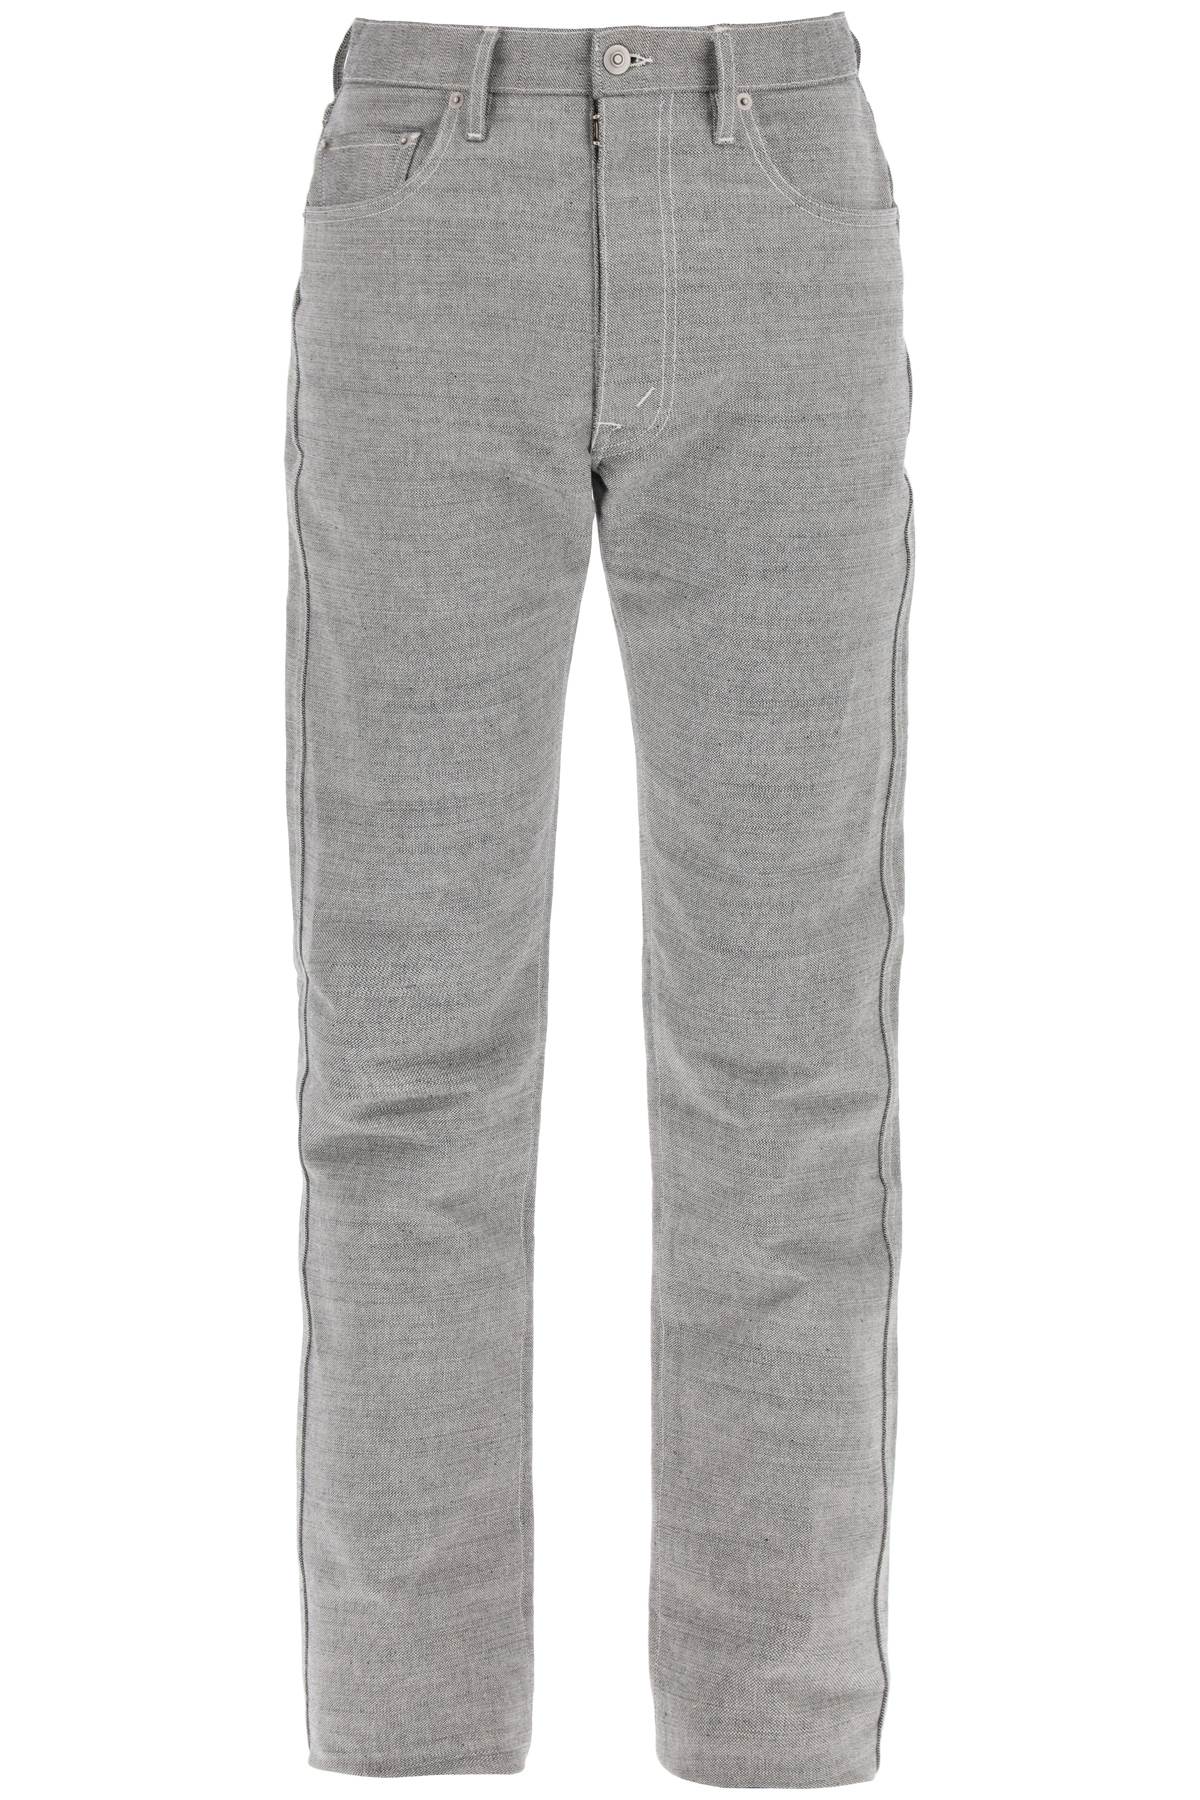 Maison margiela five-pocket trousers in m√©lange effect canvas S67LA0035 M30006 CAVIAR